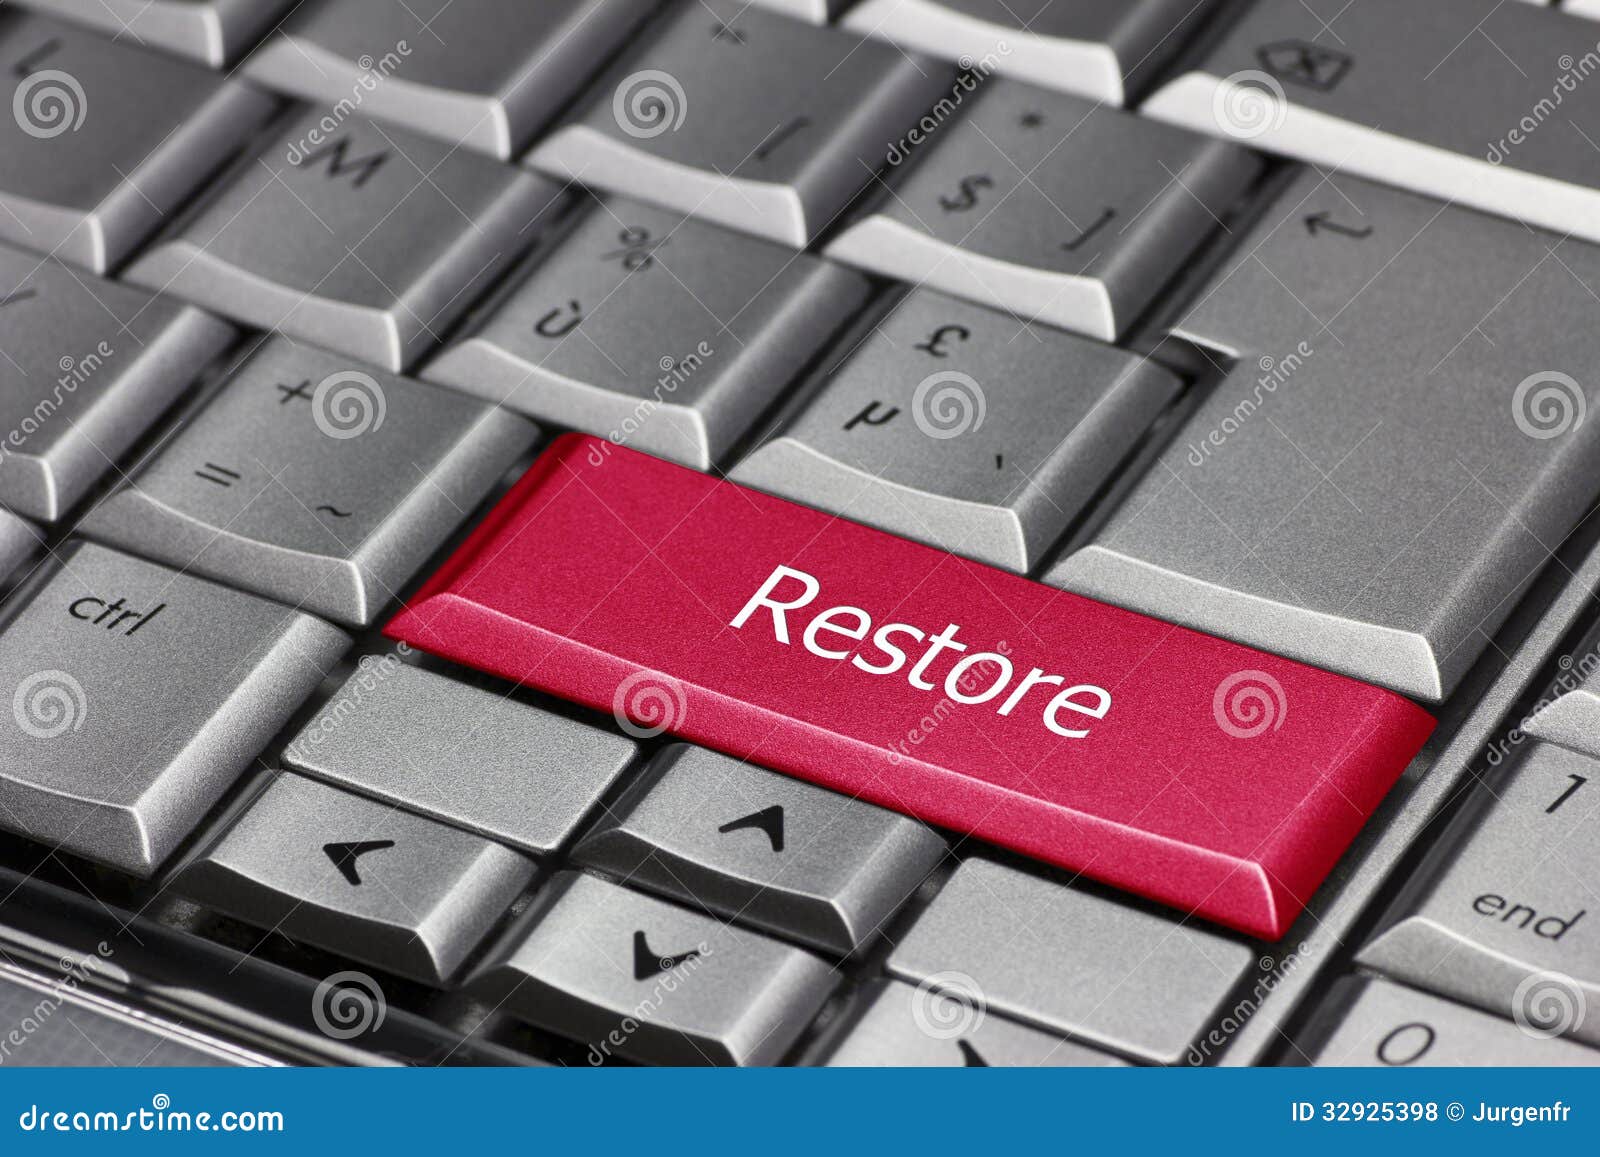 computer key - restore